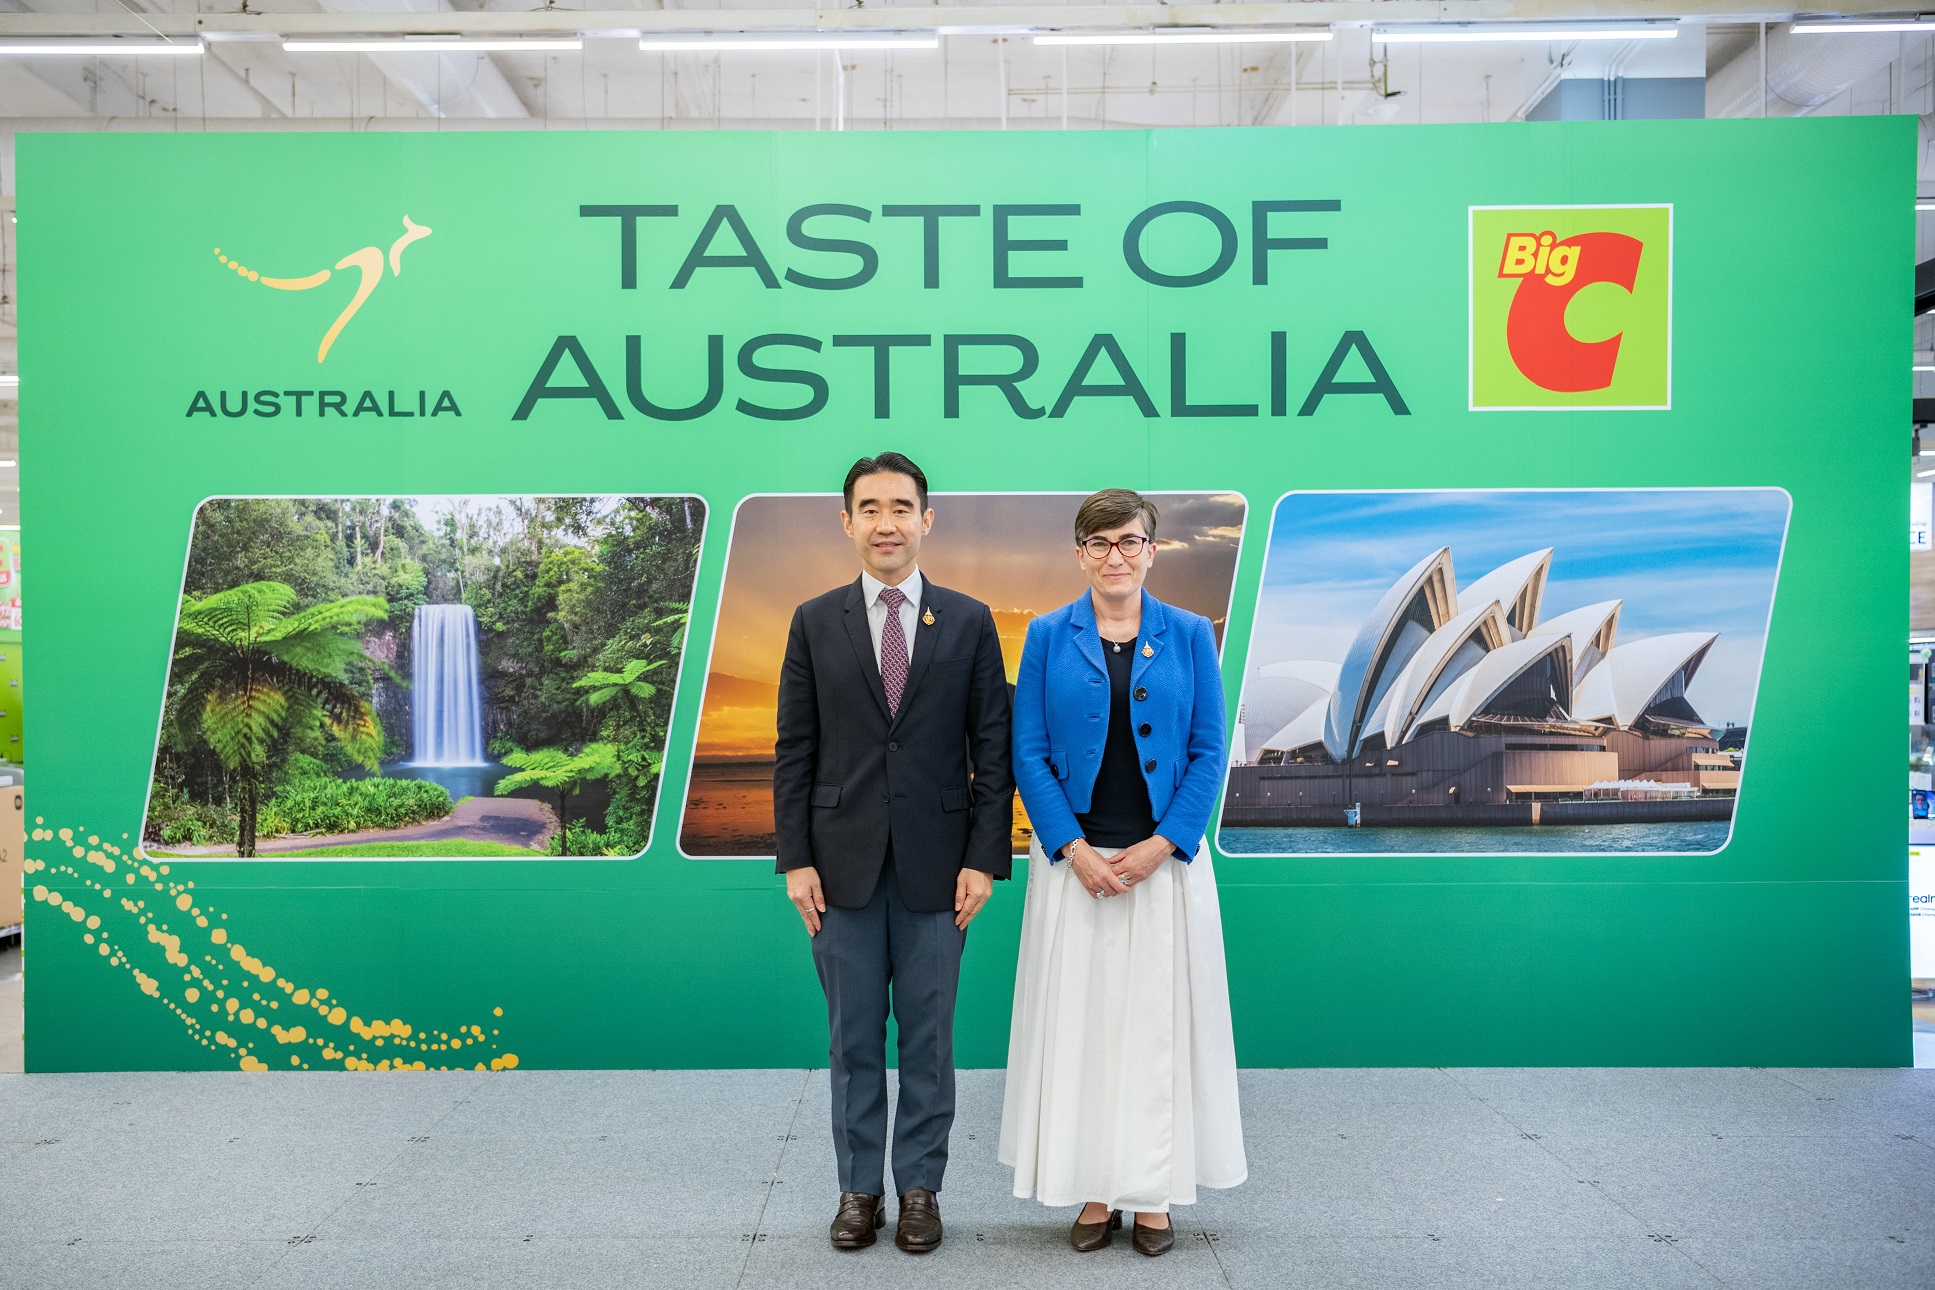 บิ๊กซี ซูเปอร์เซ็นเตอร์ เปิดเทศกาล 'Taste of Australia' เทศกาลสินค้านำเข้าจากประเทศออสเตรเลีย